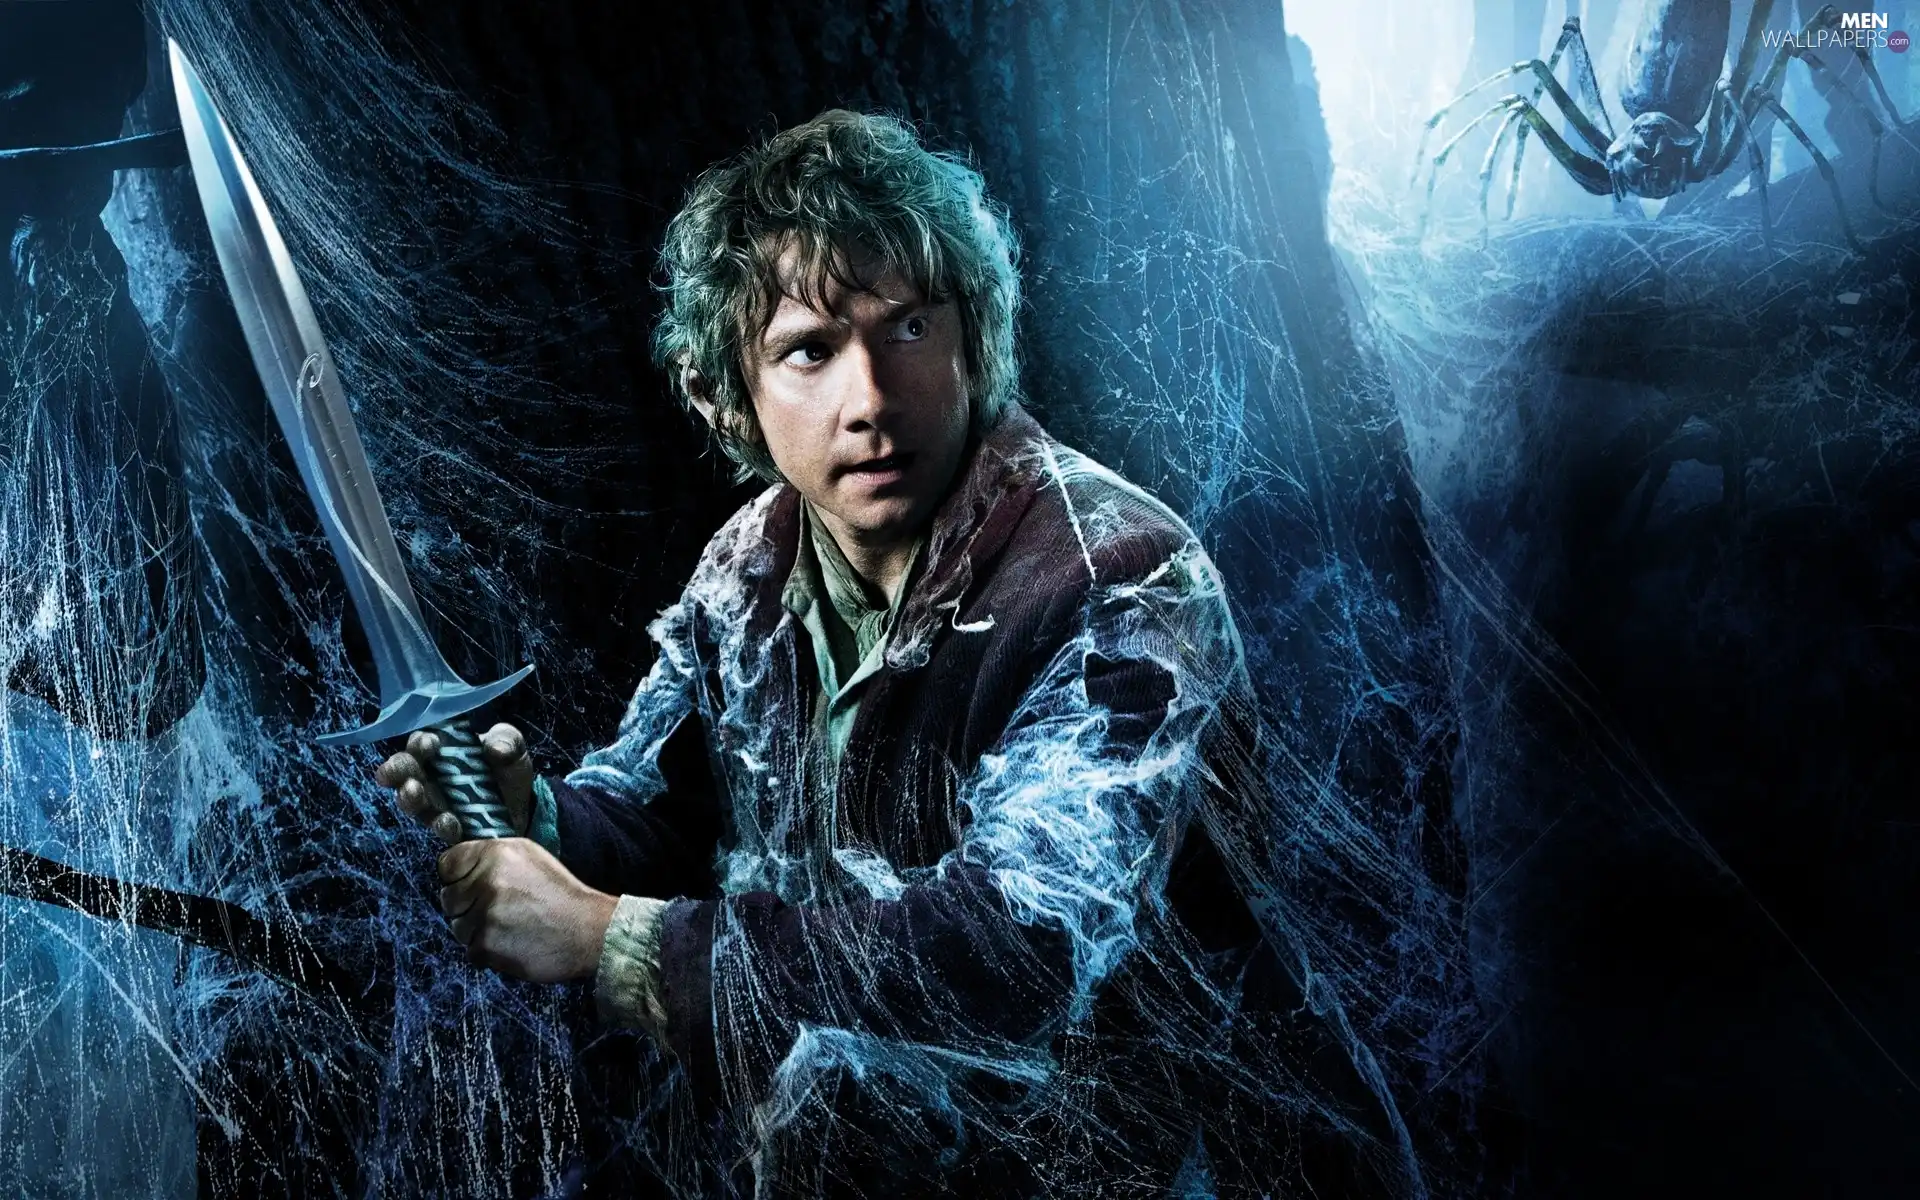 Martin Freeman, Hobbit The Desolation of Smaug, sword, Web, Bilbo Baggins, The Hobbit: The Desolation of Smaug